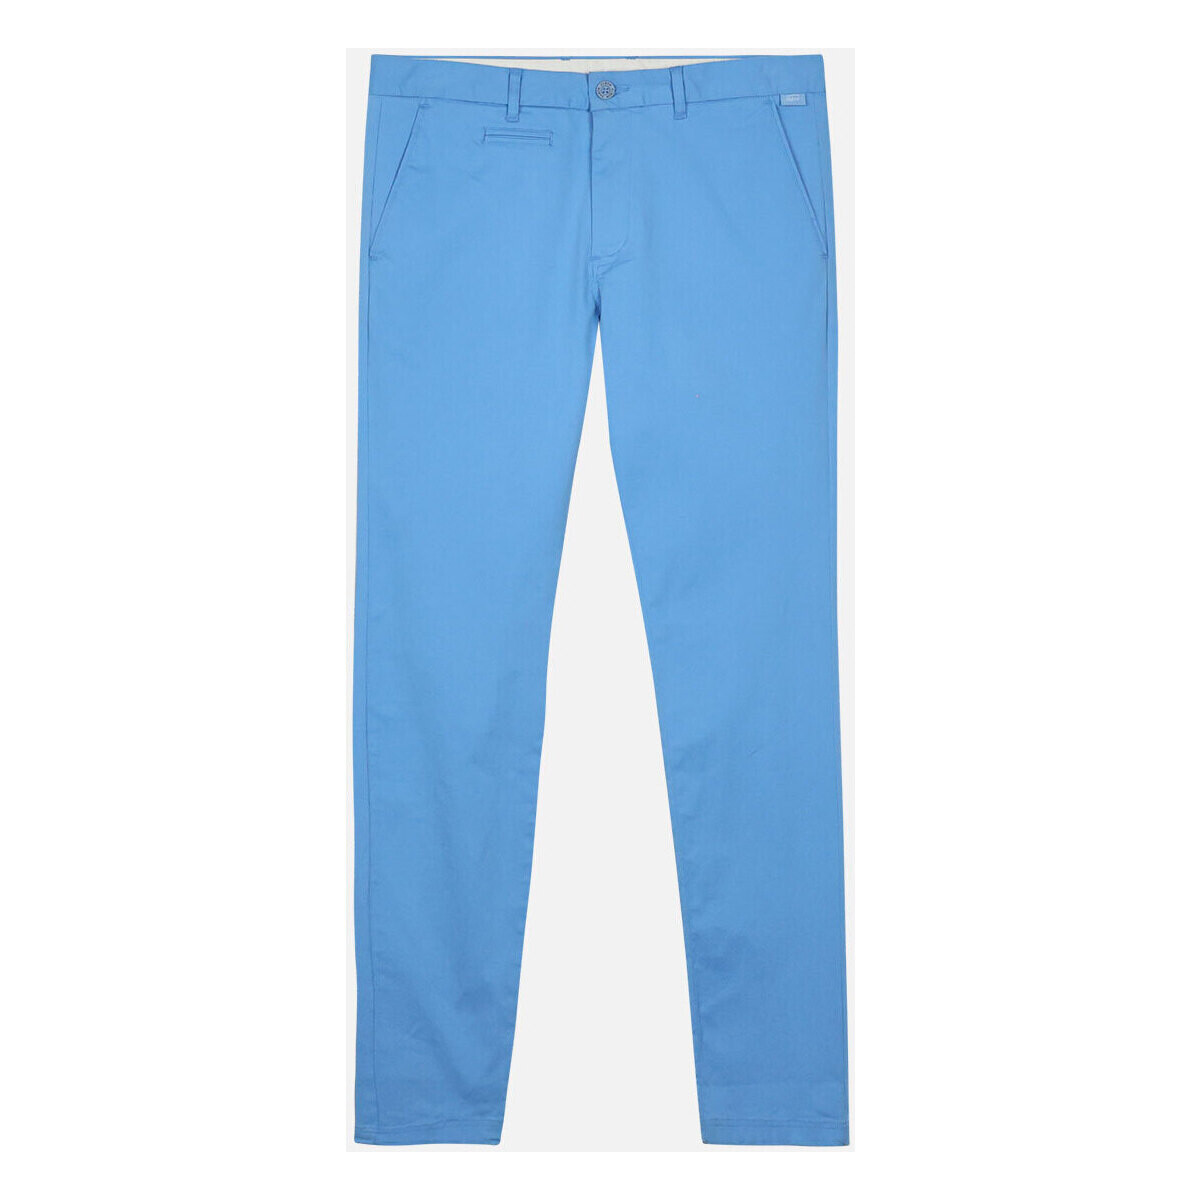 textil Hombre Pantalones Oxbow Chino REANO Azul